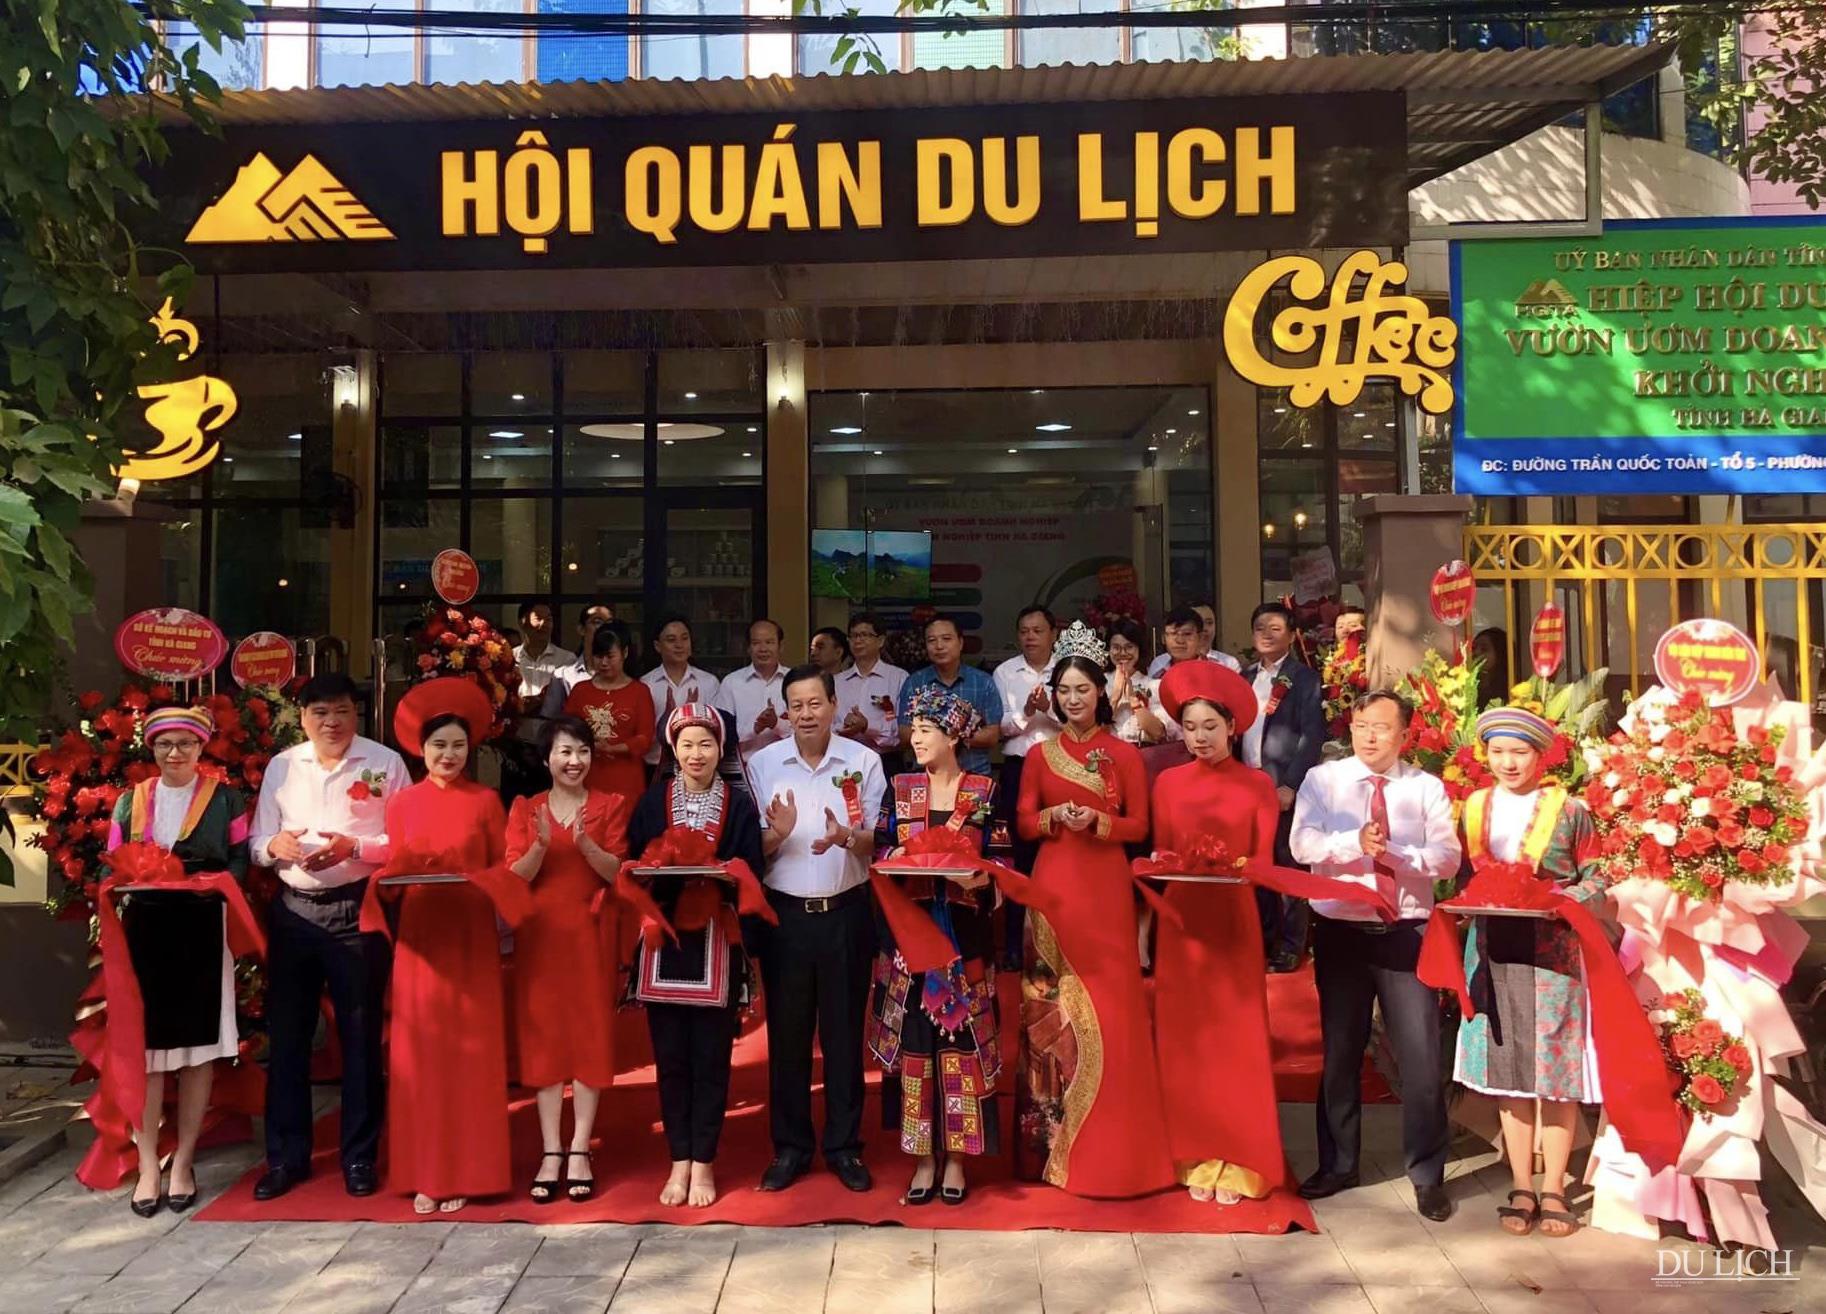 Cắt băng ra mắt văn phòng Hội quán du lịch Hà Giang